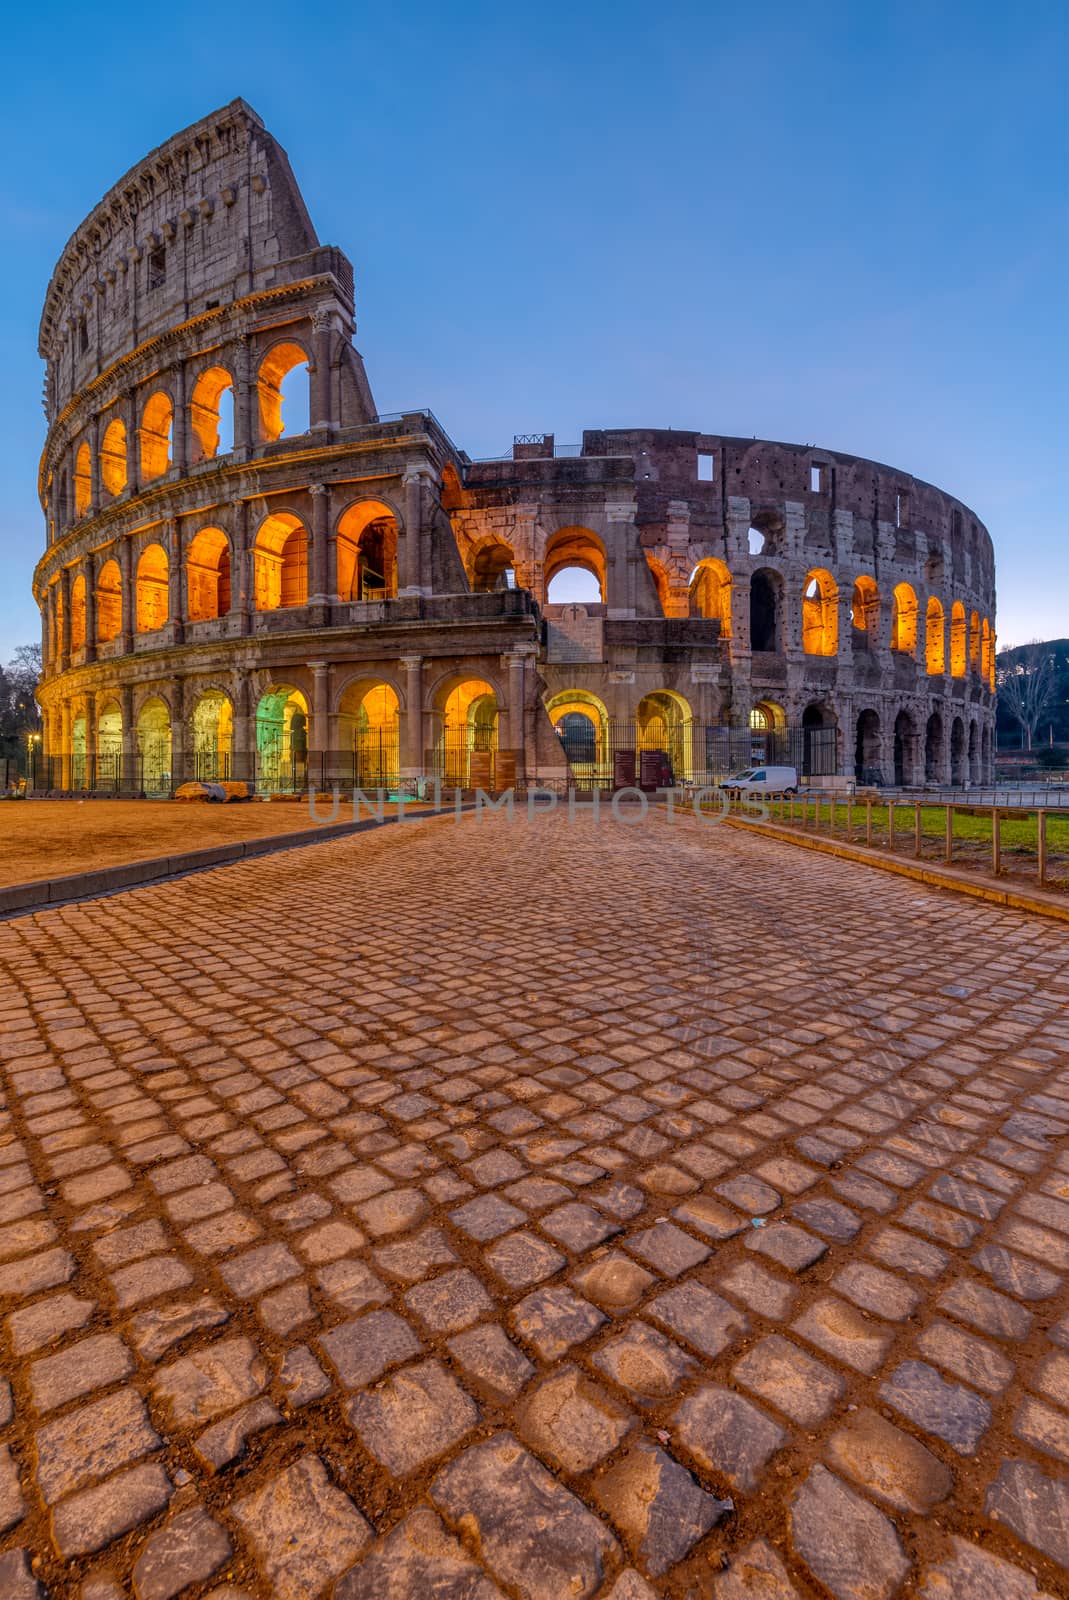 The famous Colosseum by elxeneize